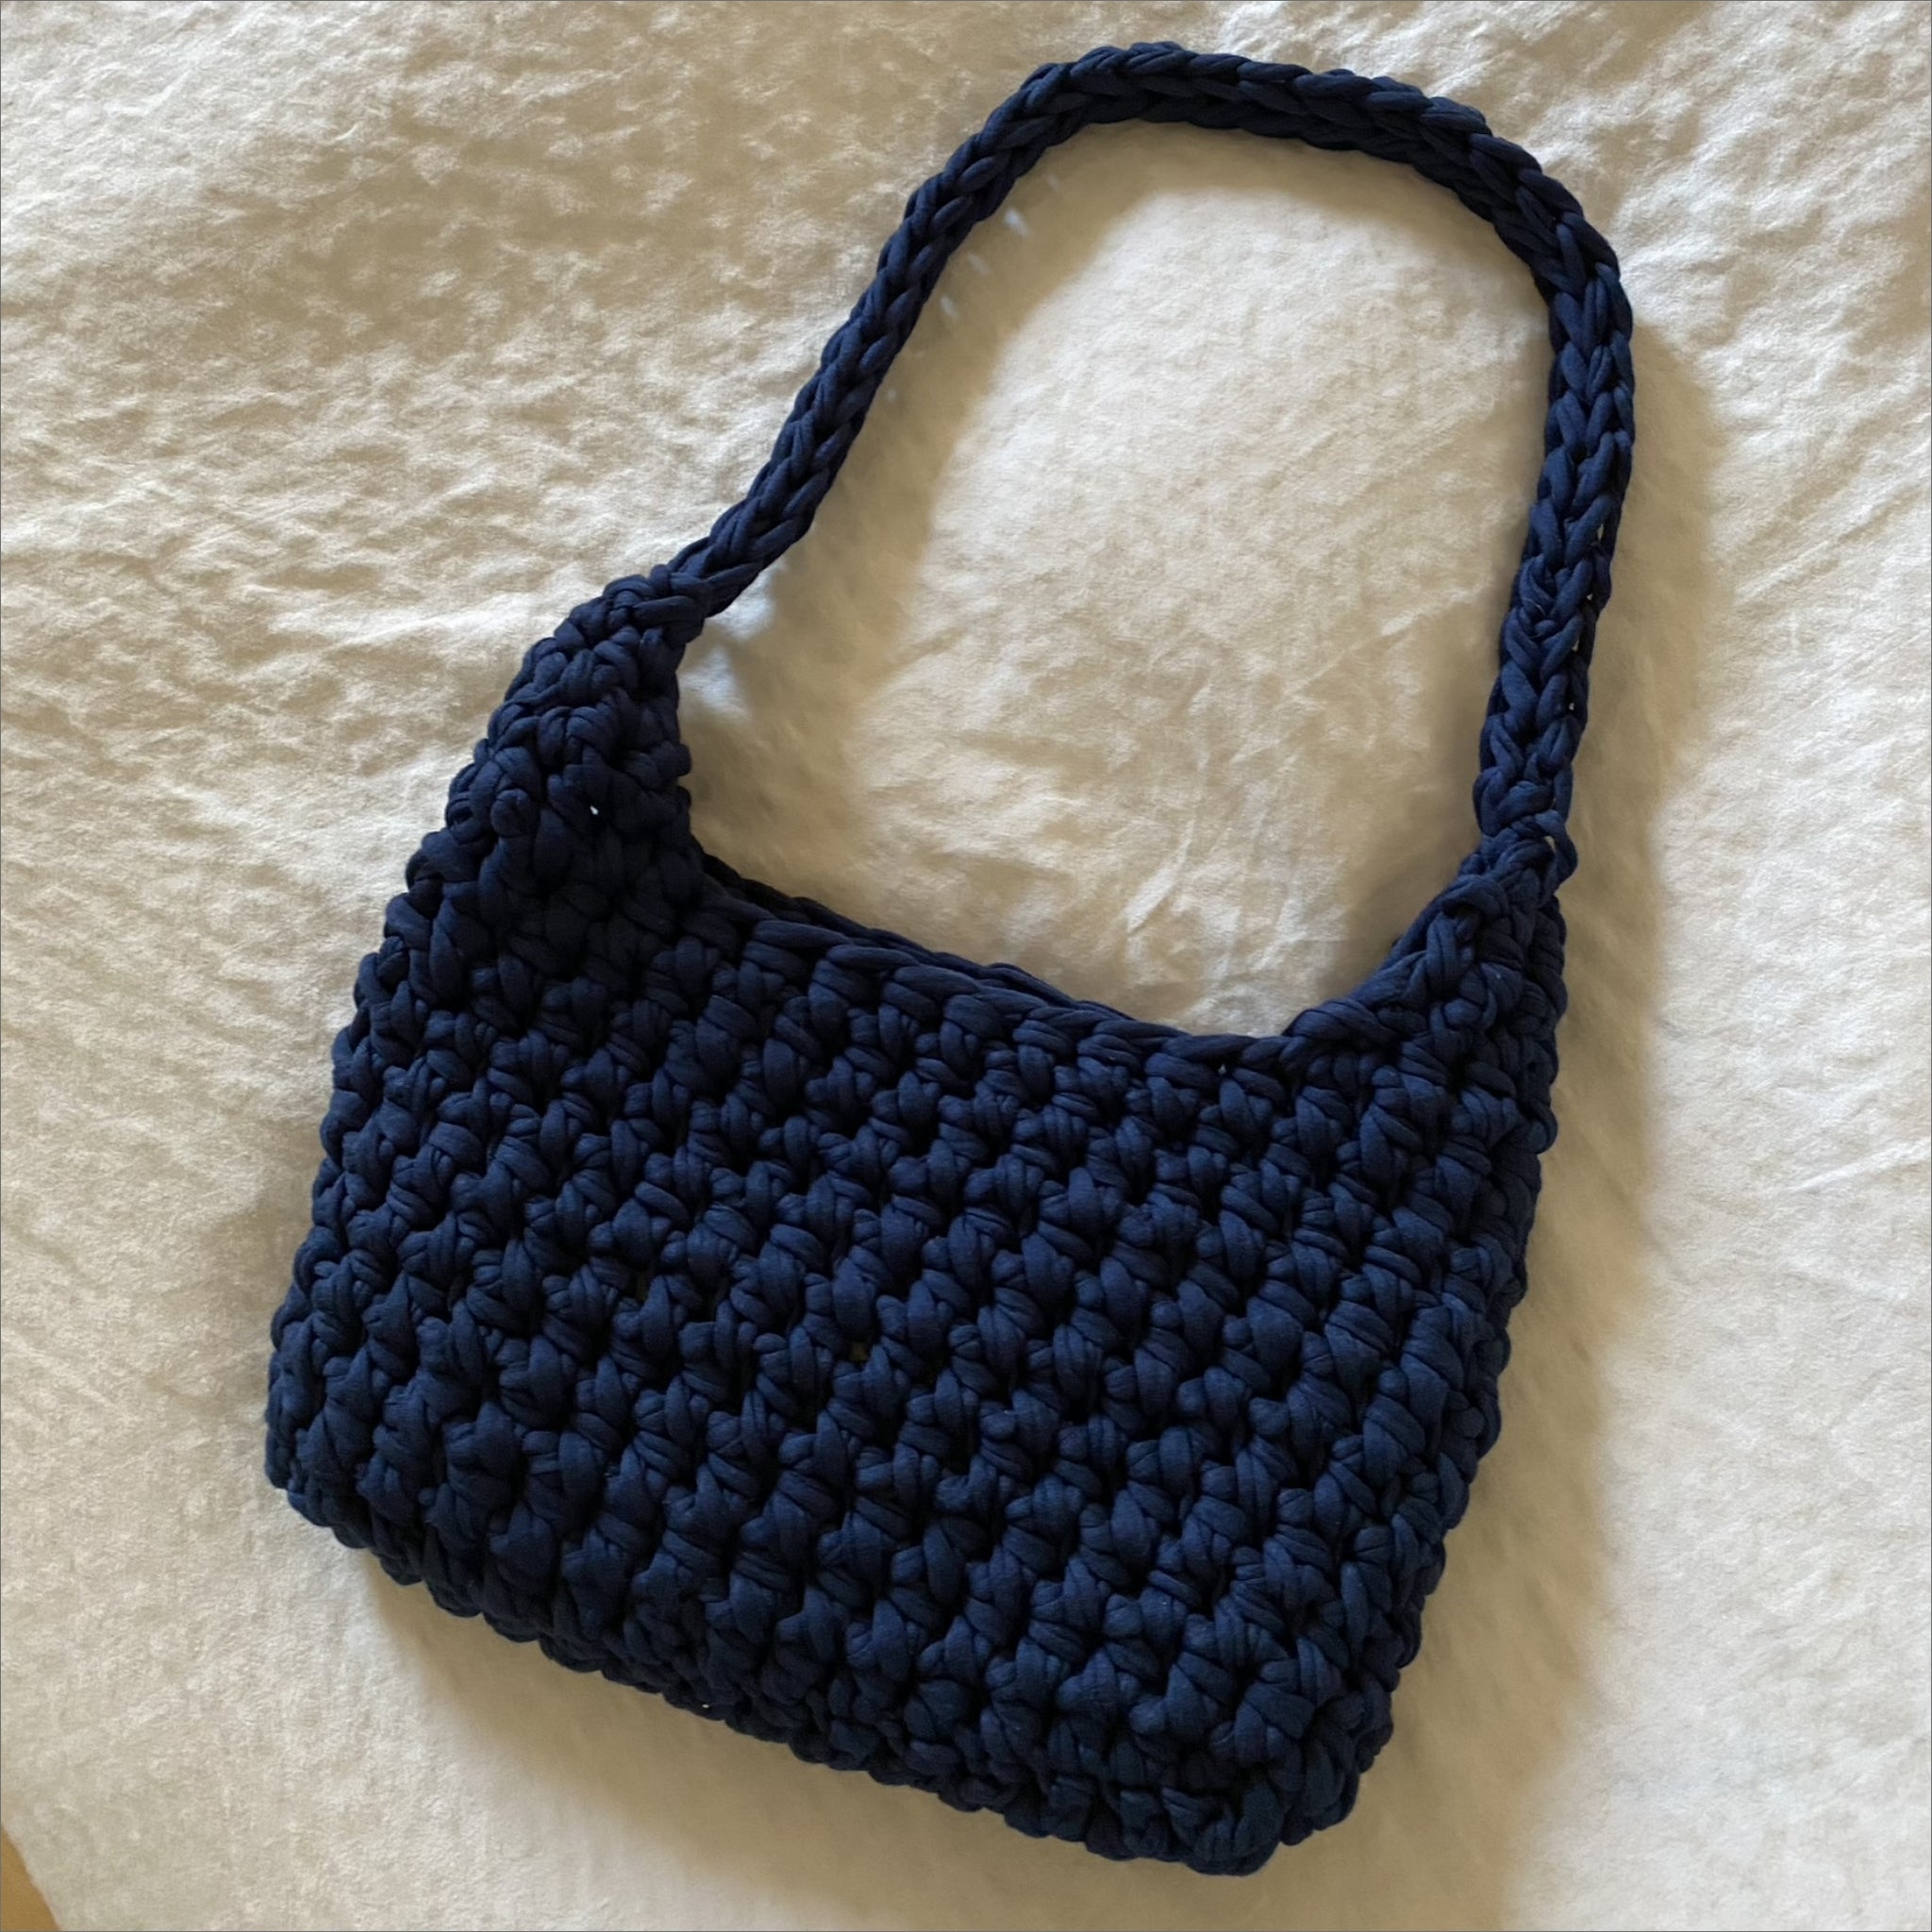 24 Free Purse Patterns to Crochet (Unique & Pretty!) | AllFreeCrochet.com